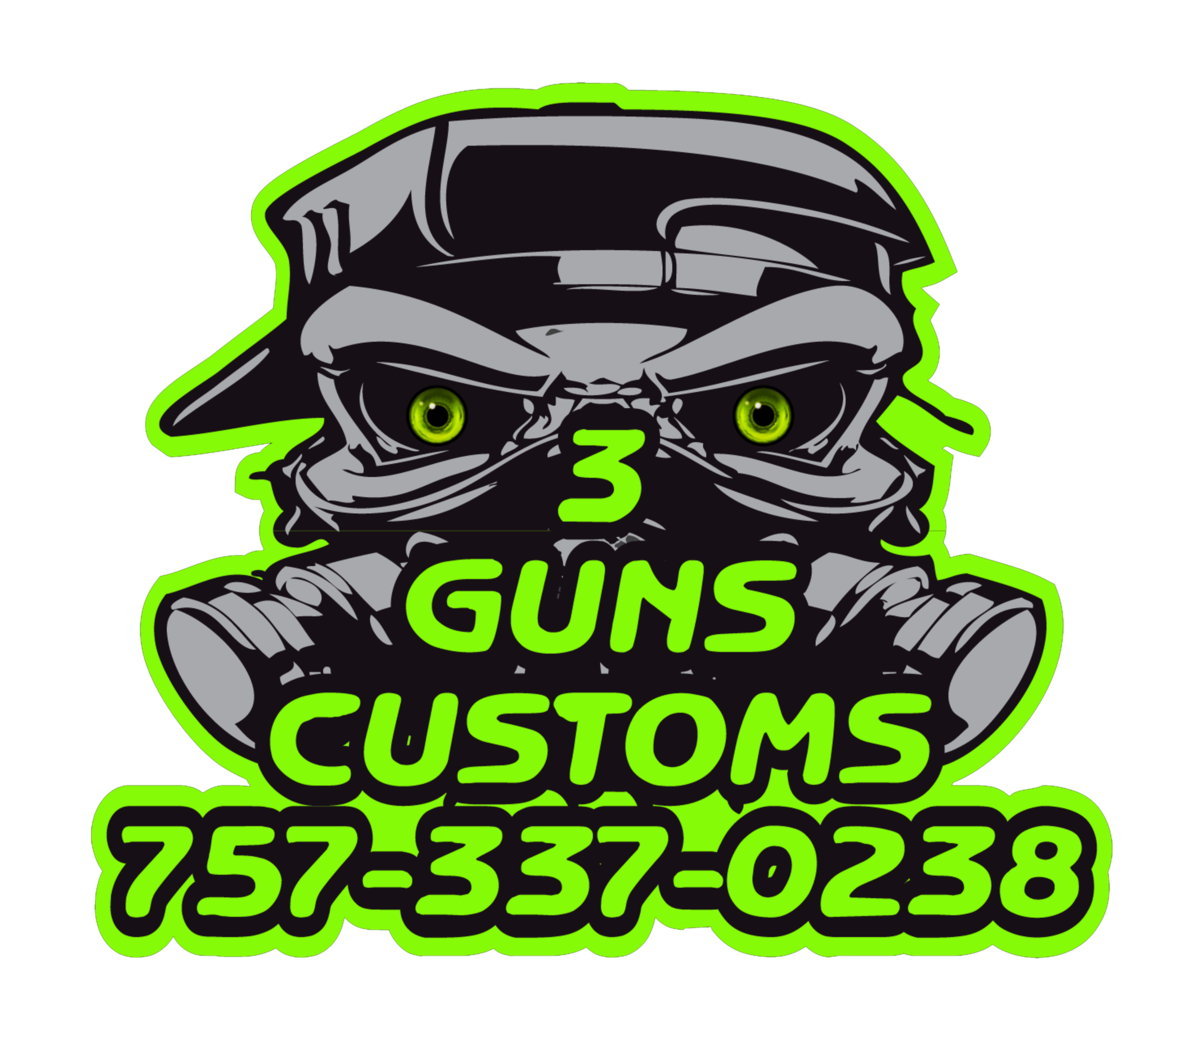 3 Guns Customs